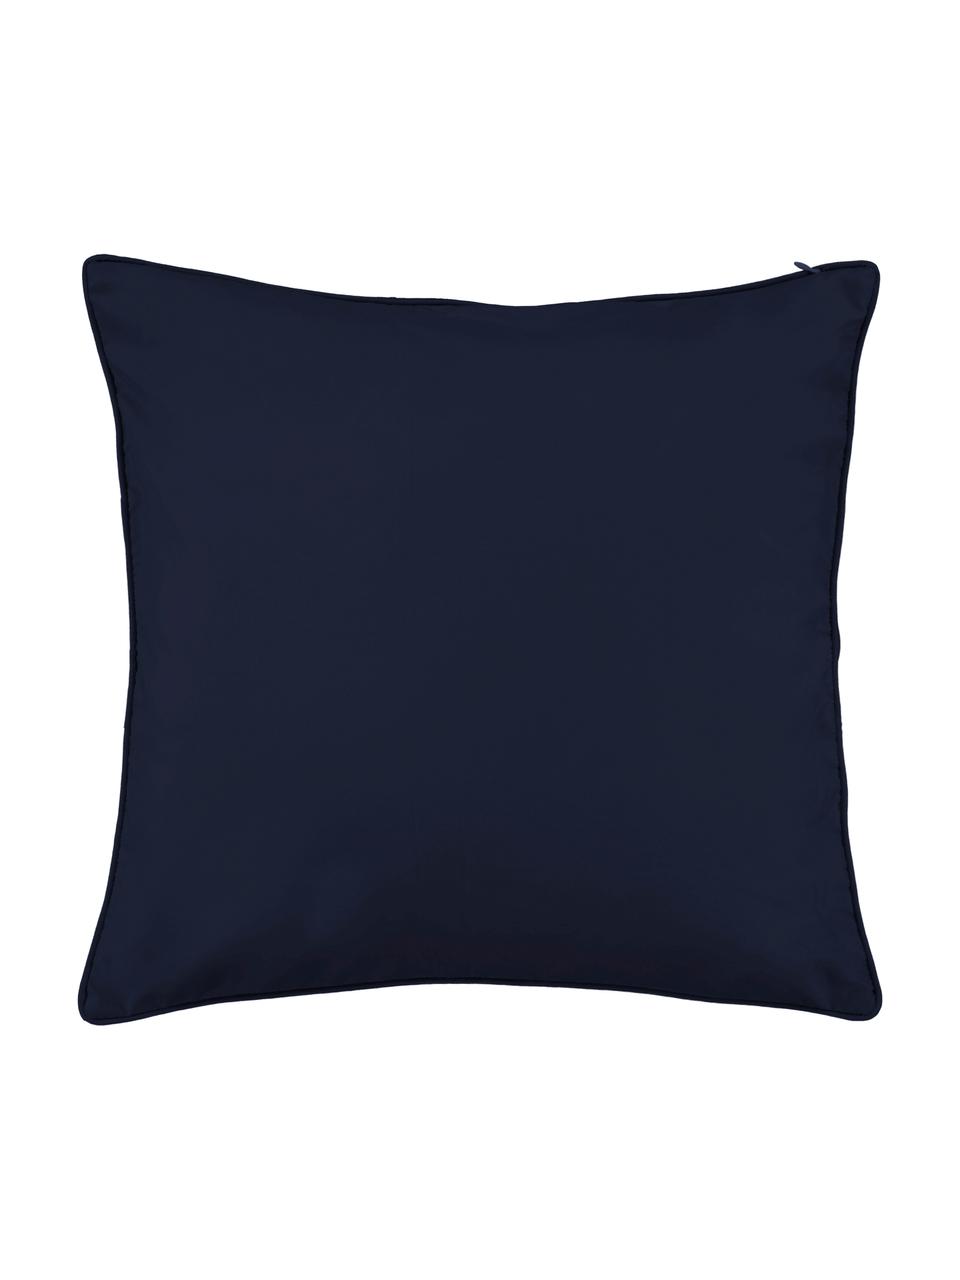 Poduszka z aksamitu z wypełnieniem Fleur, Tapicerka: 100% aksamit poliestrowy, Ciemny niebieski, wielobarwny, S 50 x D 50 cm